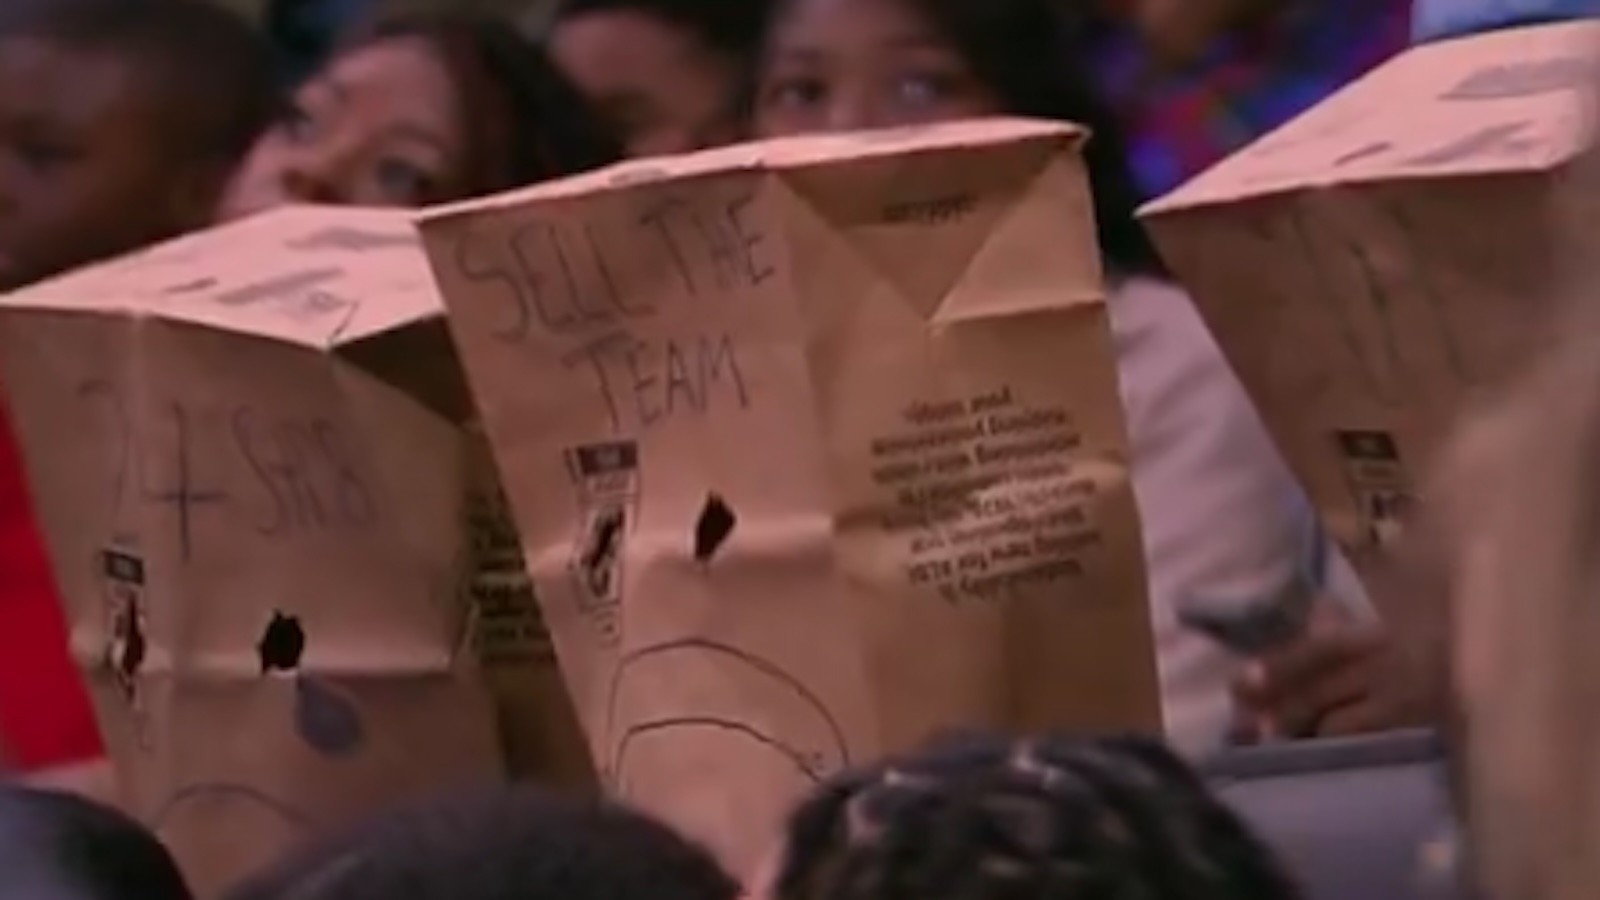 Pistons-fans-paper-bag.jpg